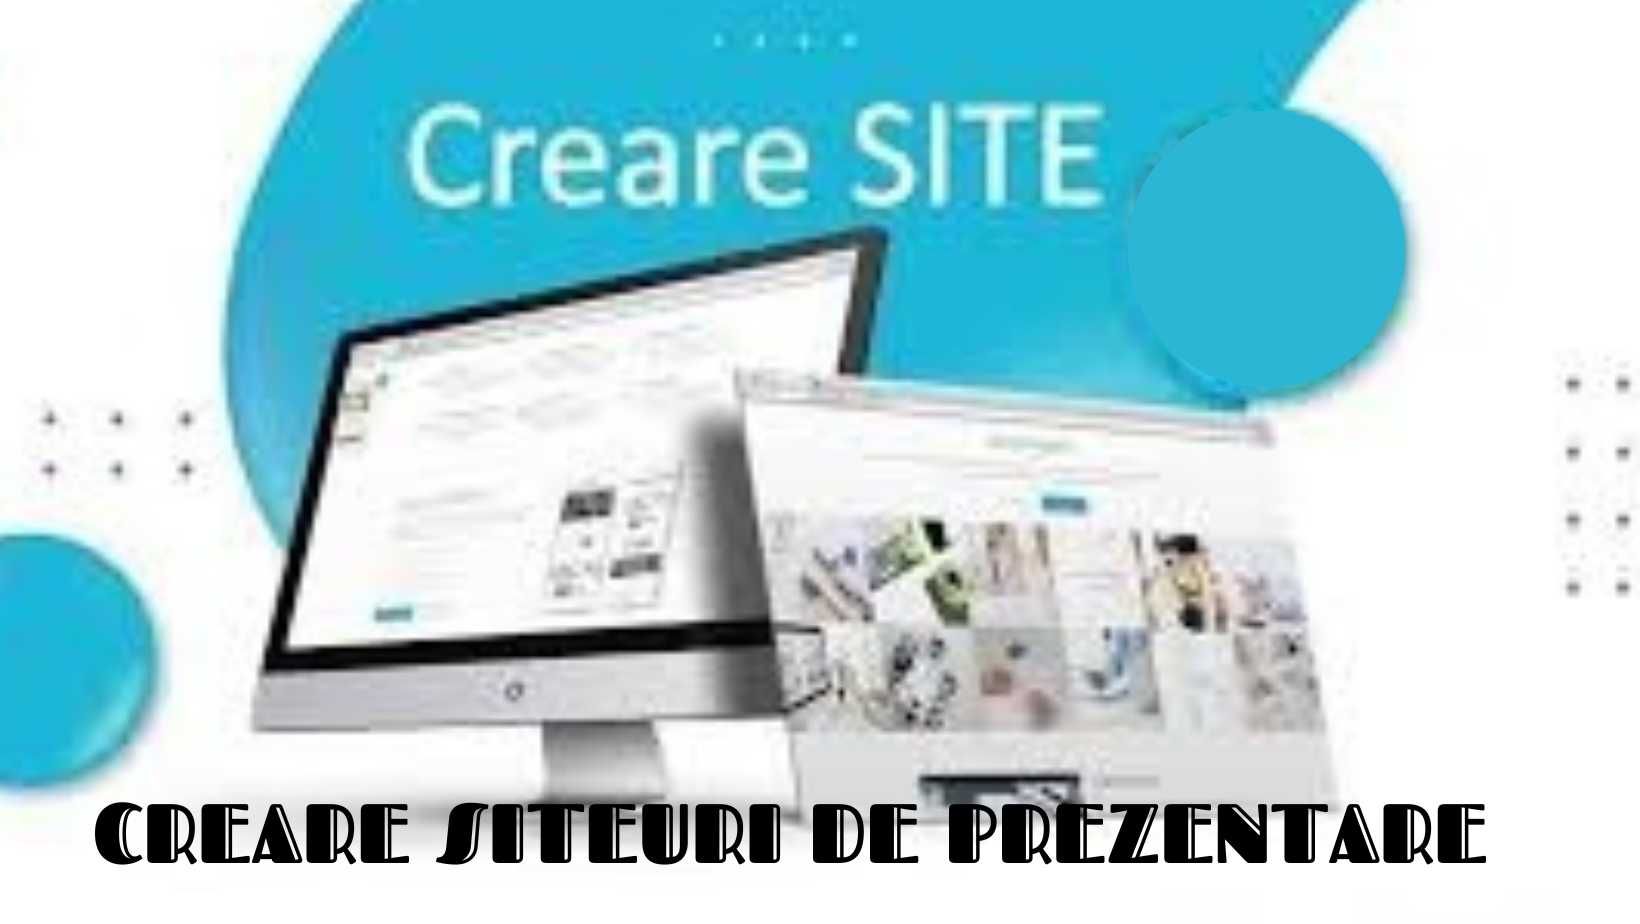 Creare Siteuri De Prezentare - Magazin Online - Promovare siteuri